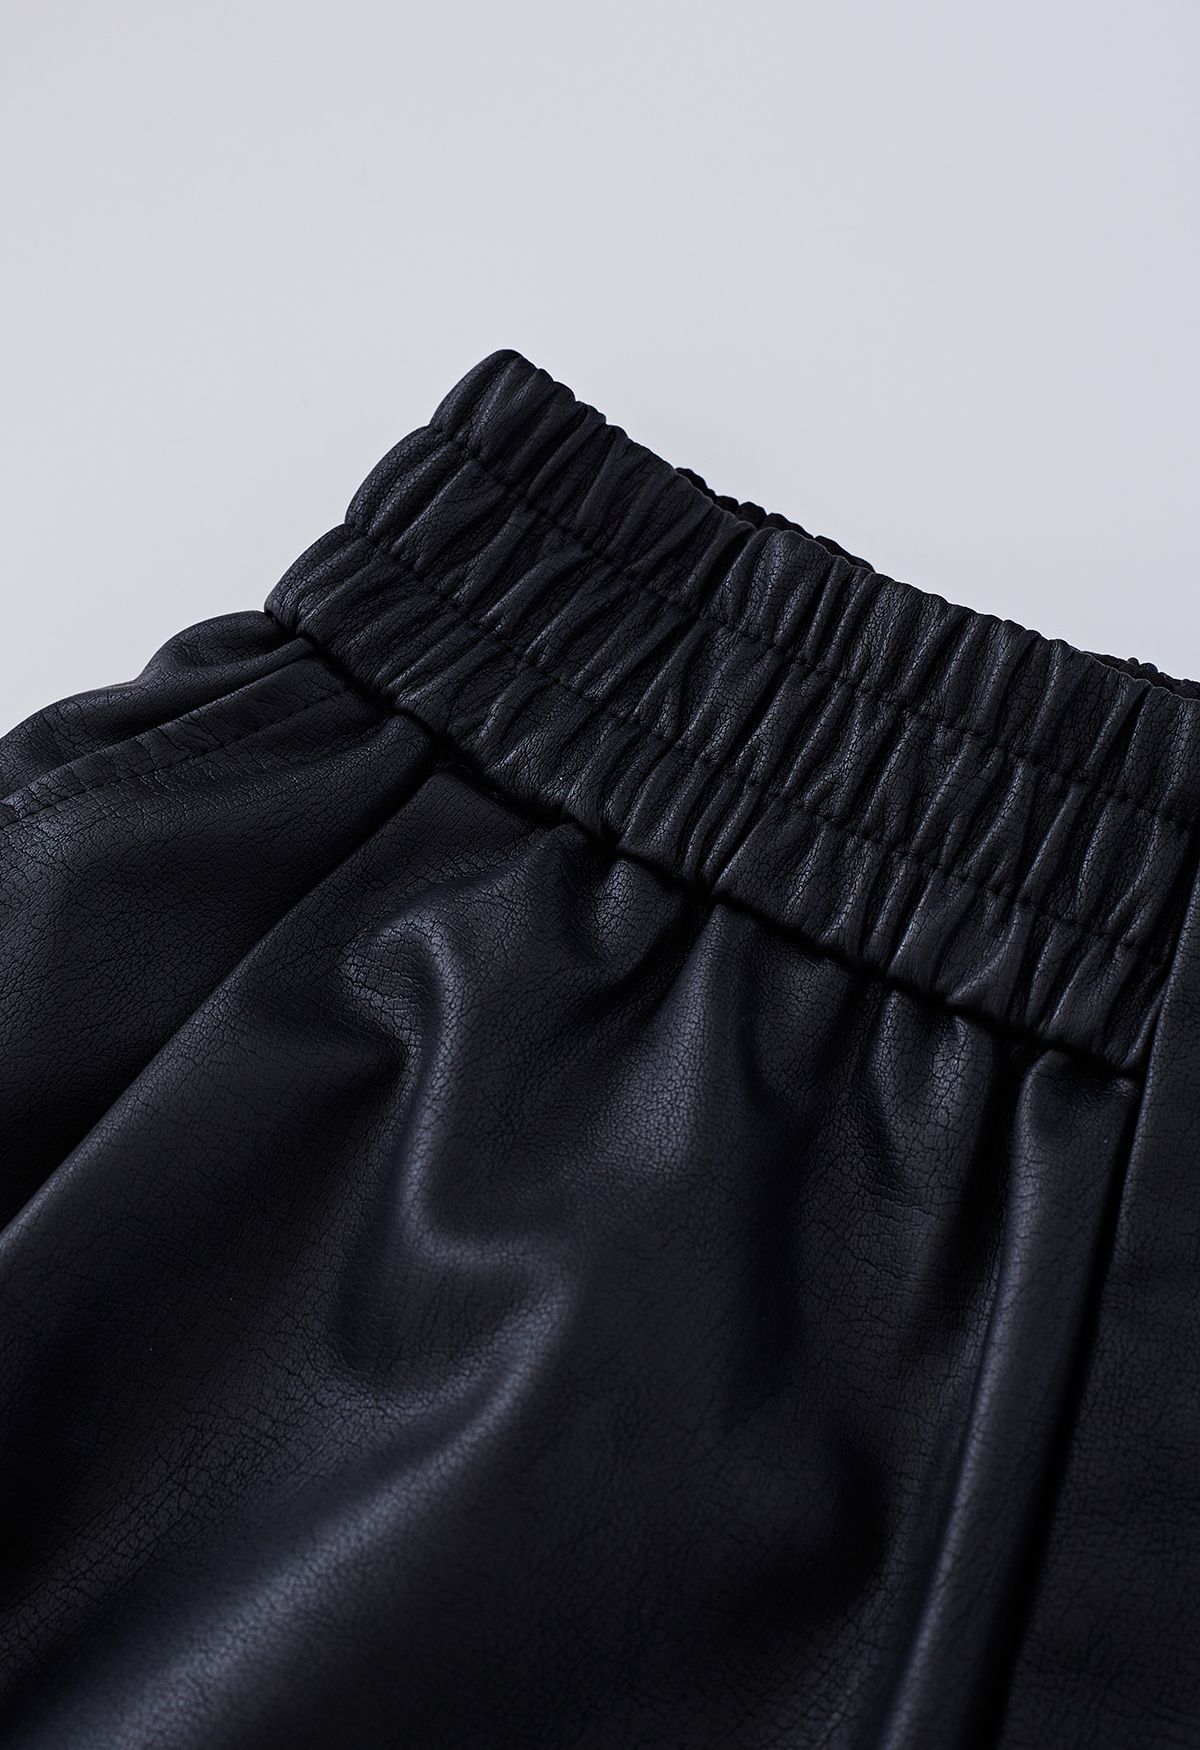 Shorts de piel sintética con botones texturizados en negro